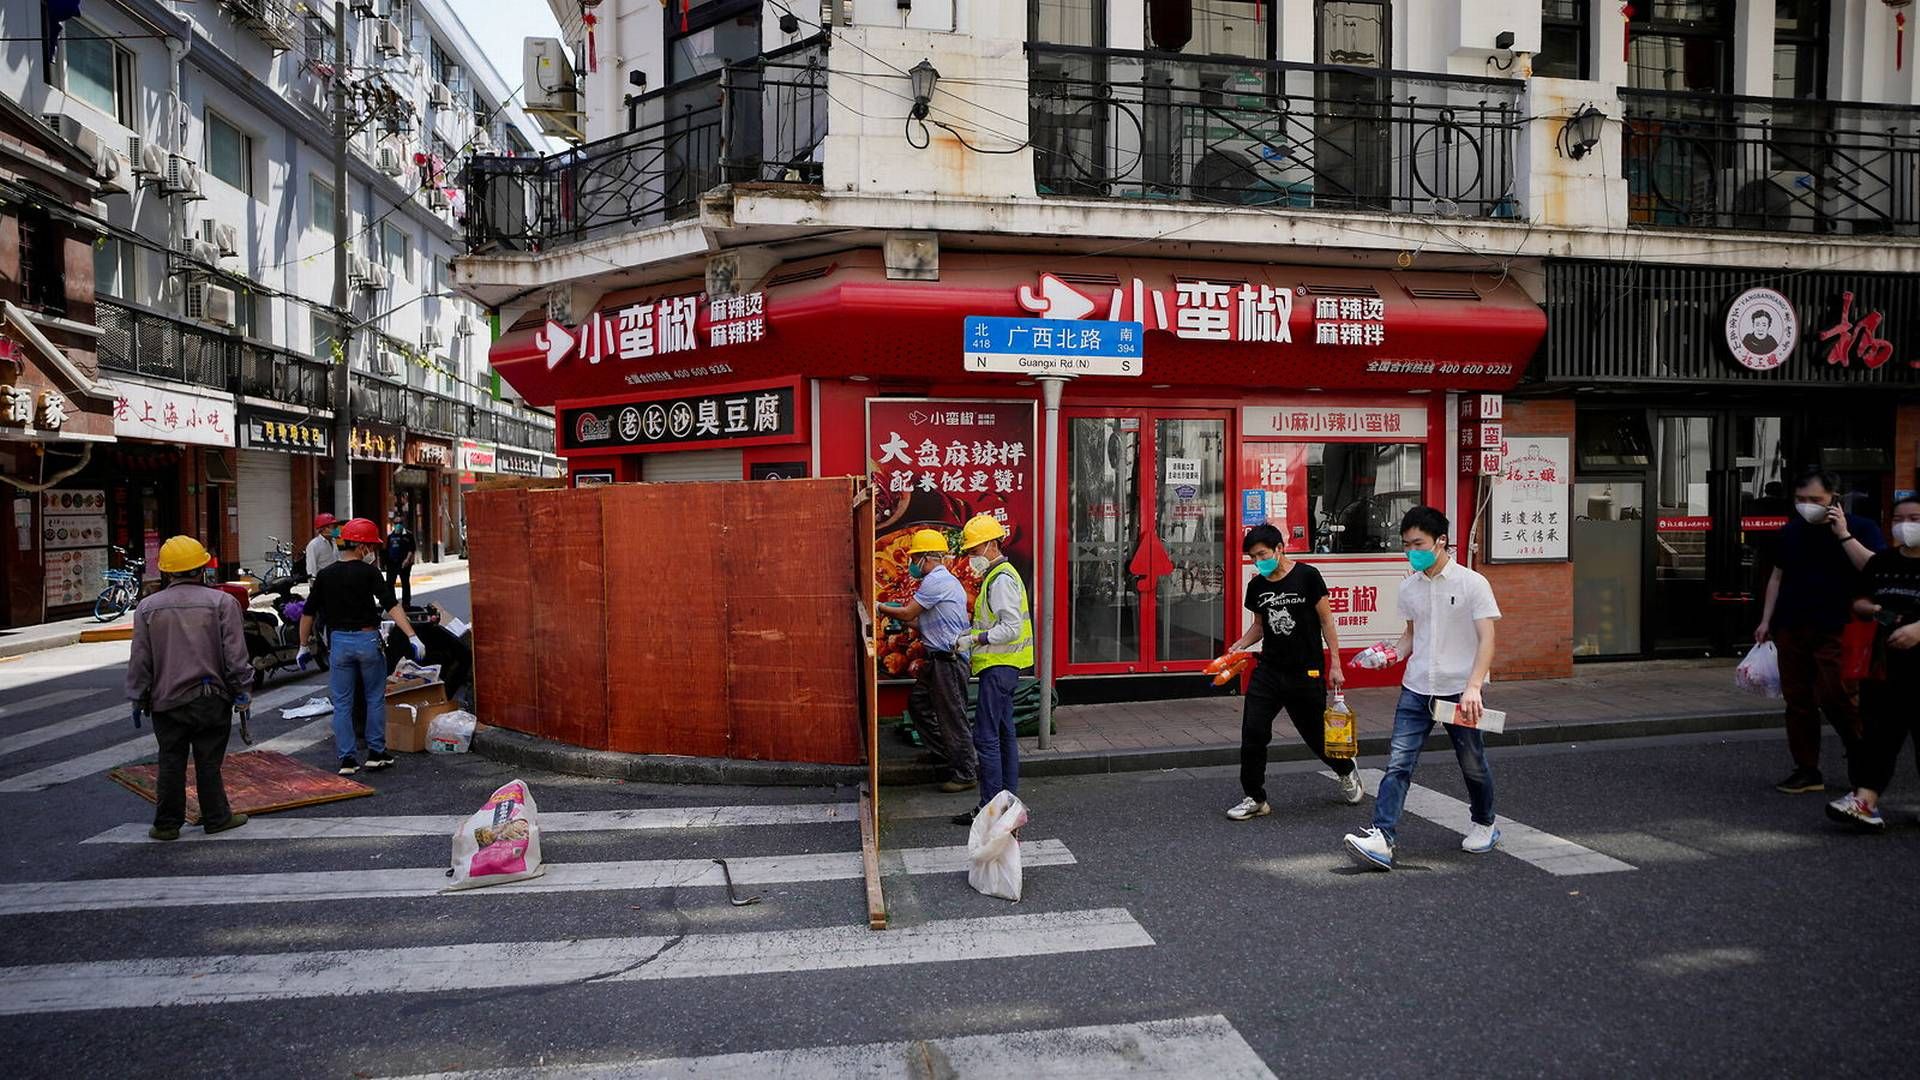 Borgere i et nedlukket beboerområde i Shanghai. Siden begyndelsen af april har Shanghai haft strenge coronaregler som følge af det største udbrud i Kina siden begyndelsen af pandemien. | Foto: Aly Song/Reuters/Ritzau Scanpix